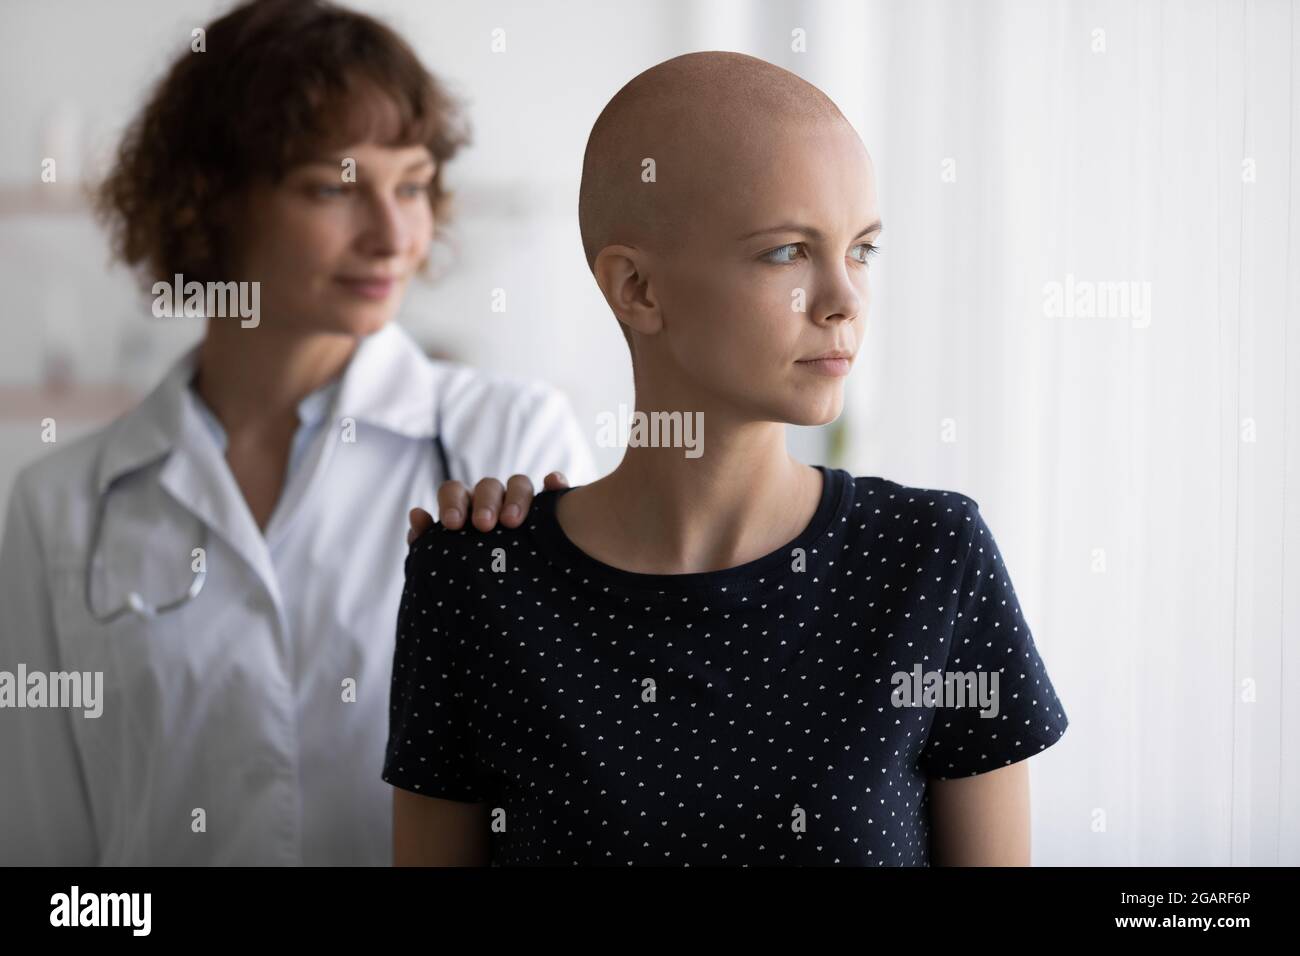 Junge Onkologin unterstützt gestresste Krebspatientin. Stockfoto